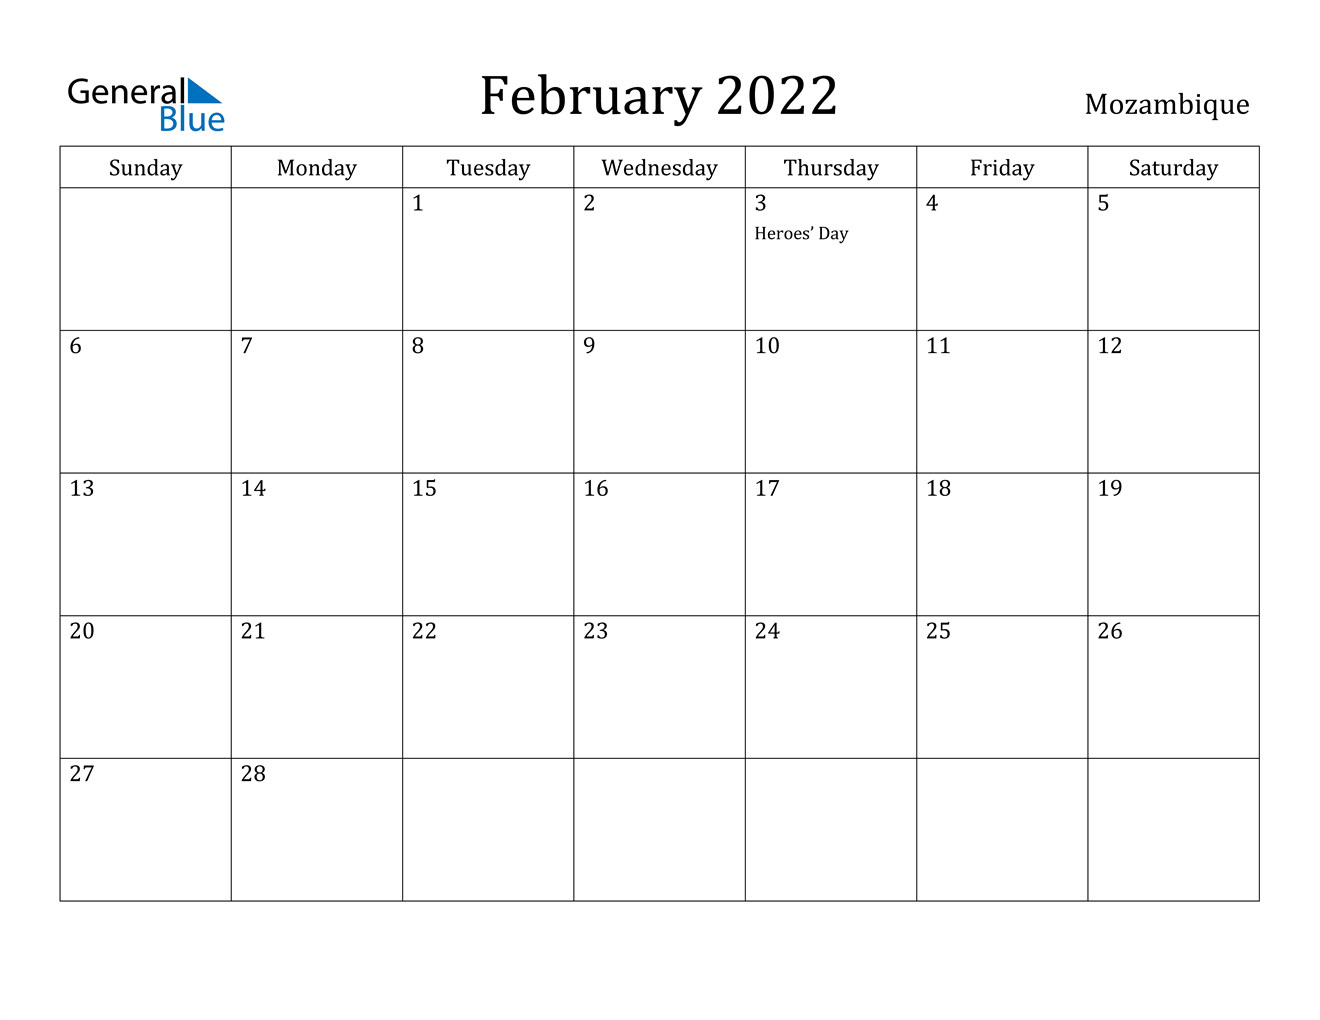 February 2022 Calendar - Mozambique